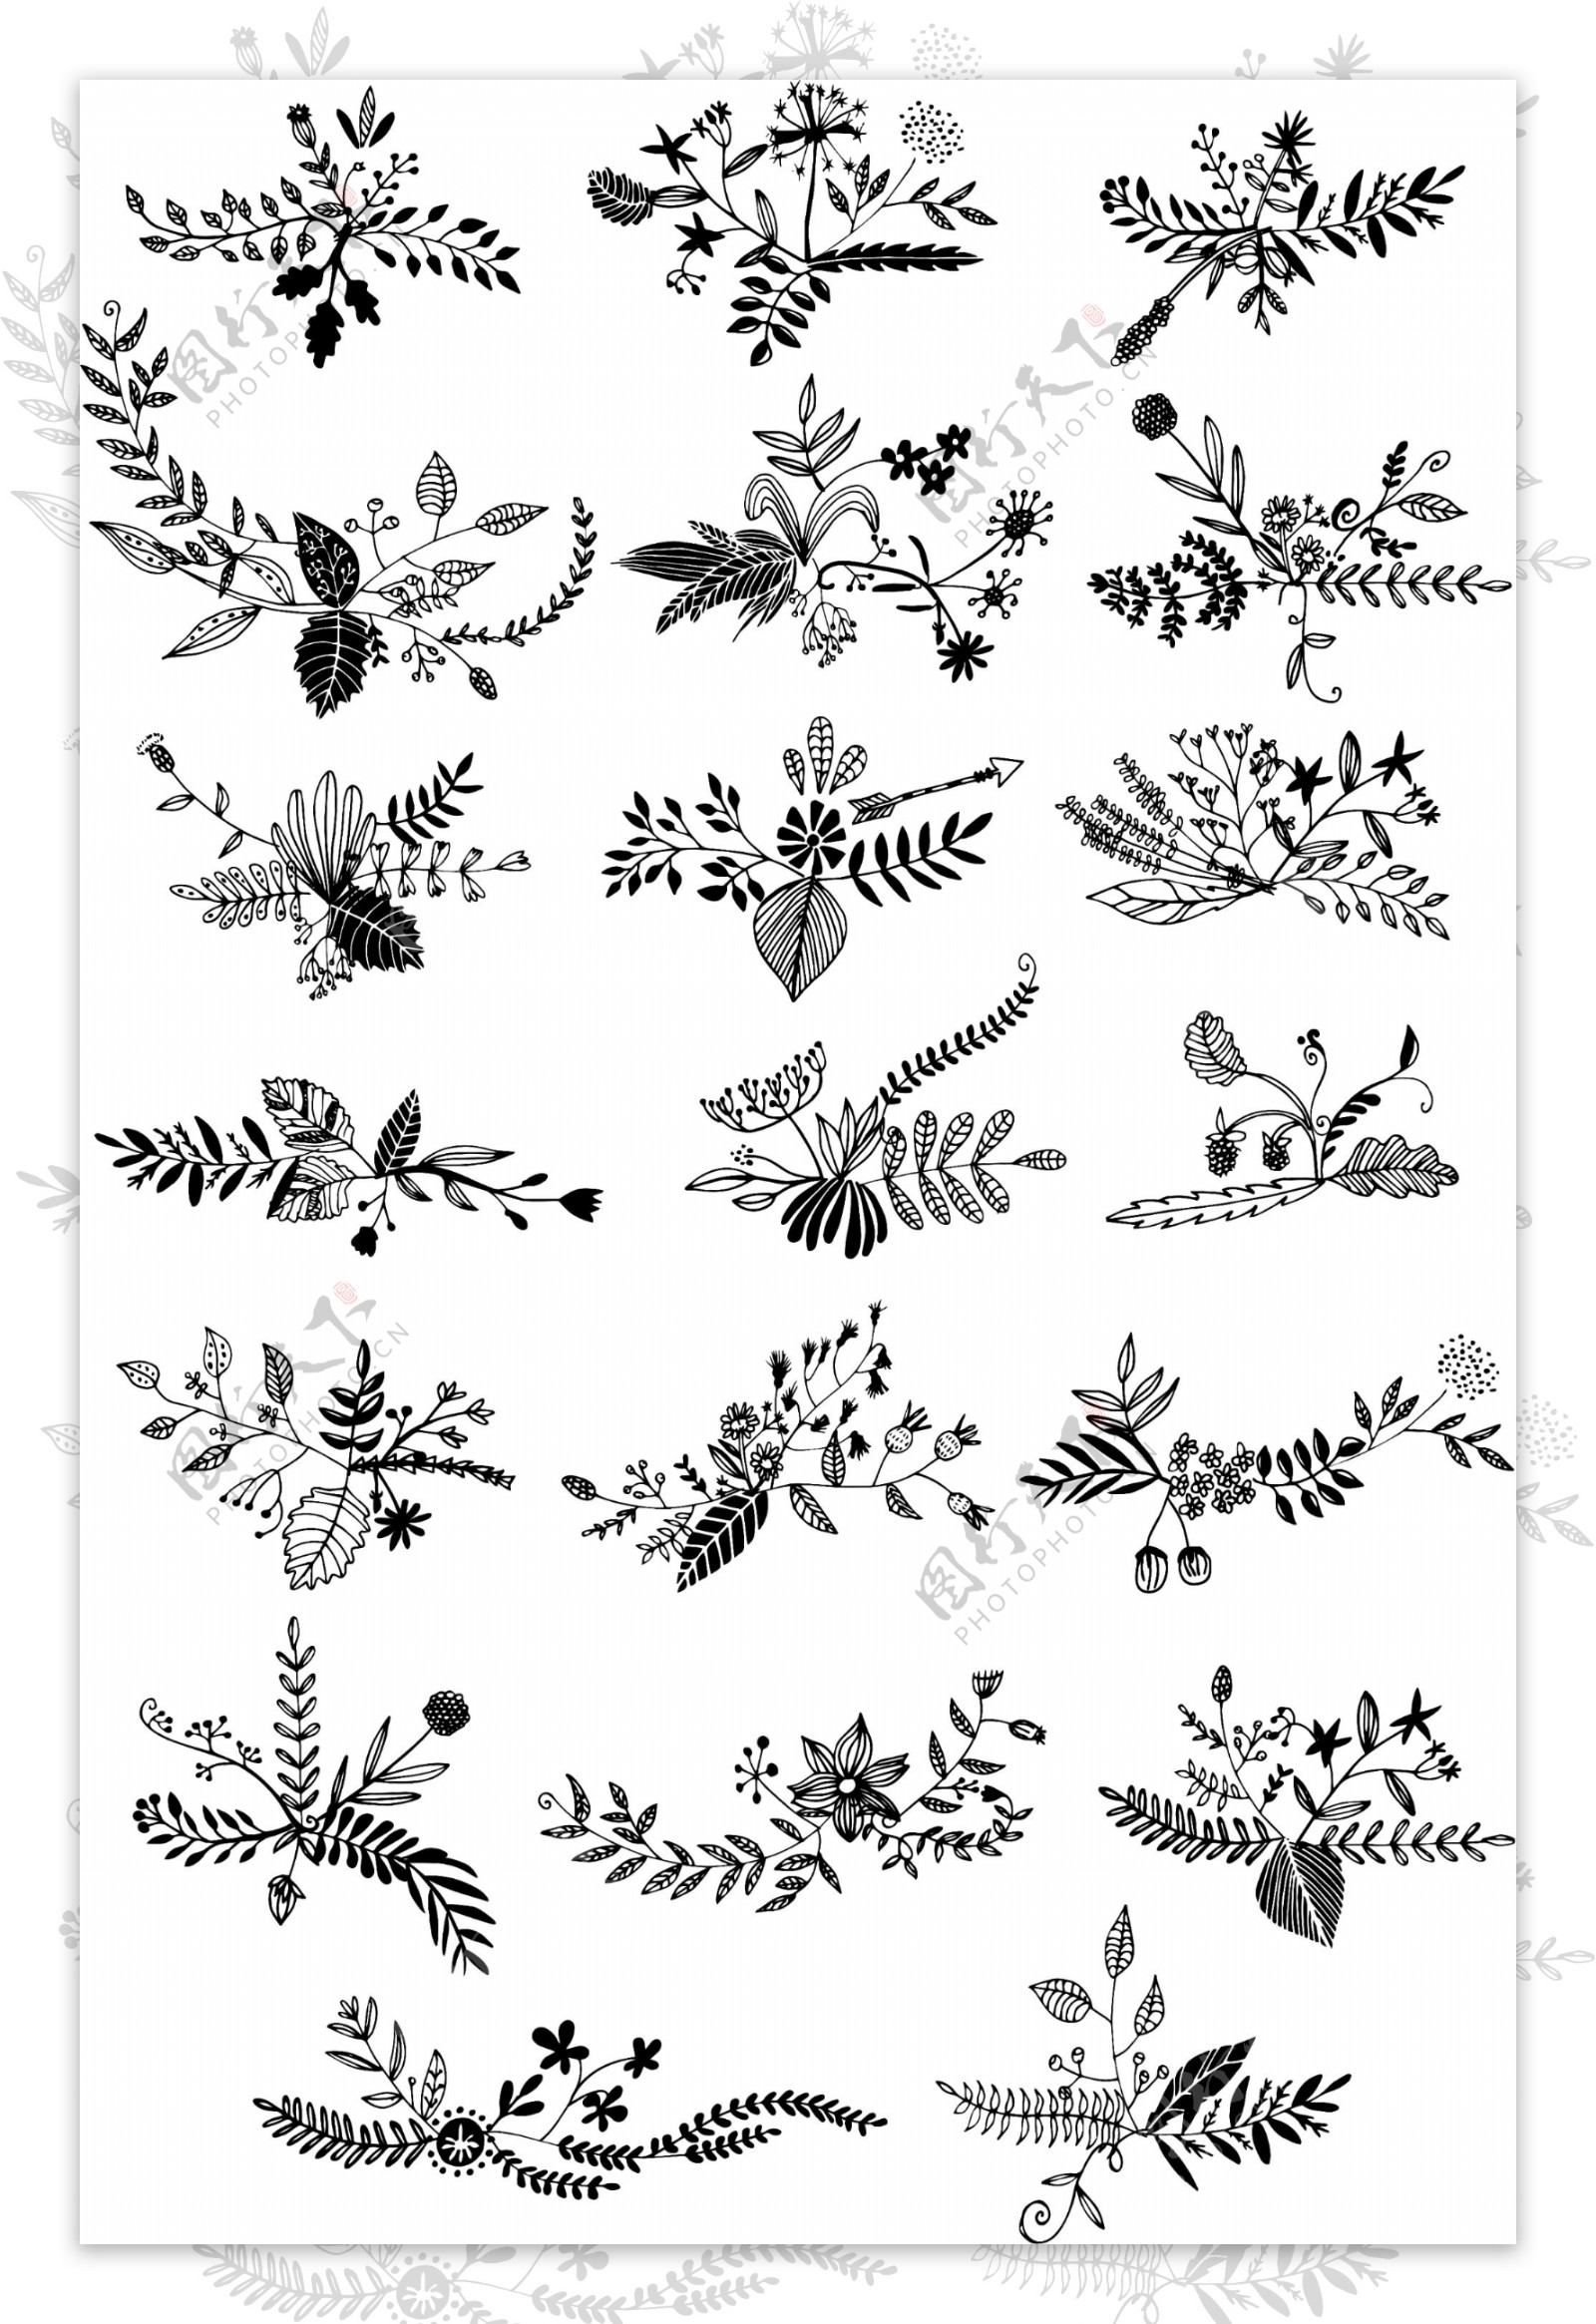 黑白线描花草植物图案